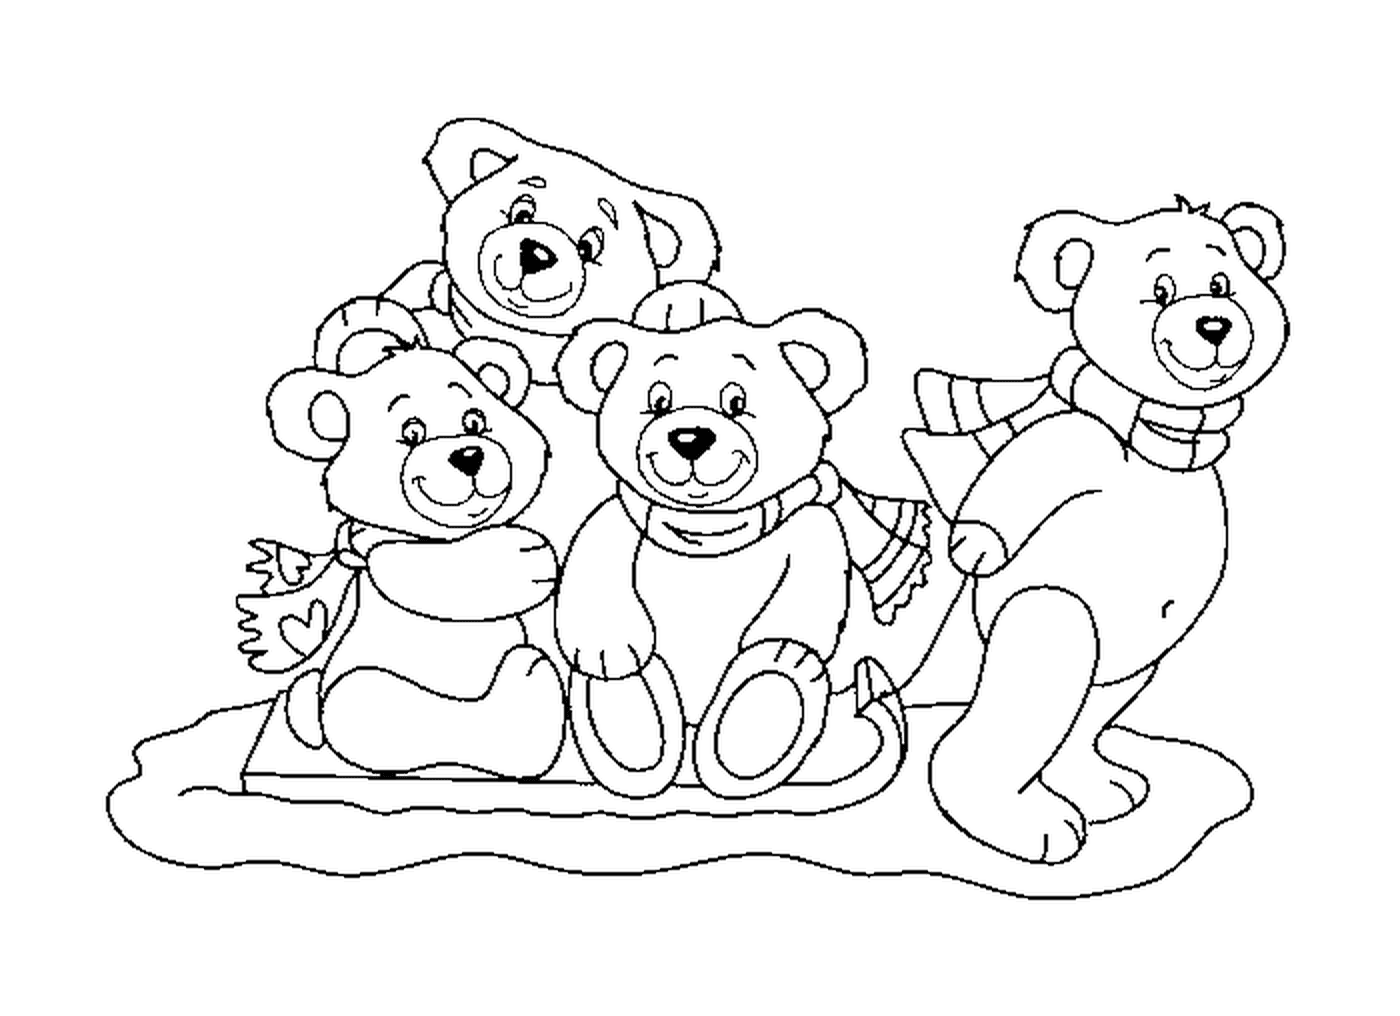  أسرة الدب المُددَرْم 